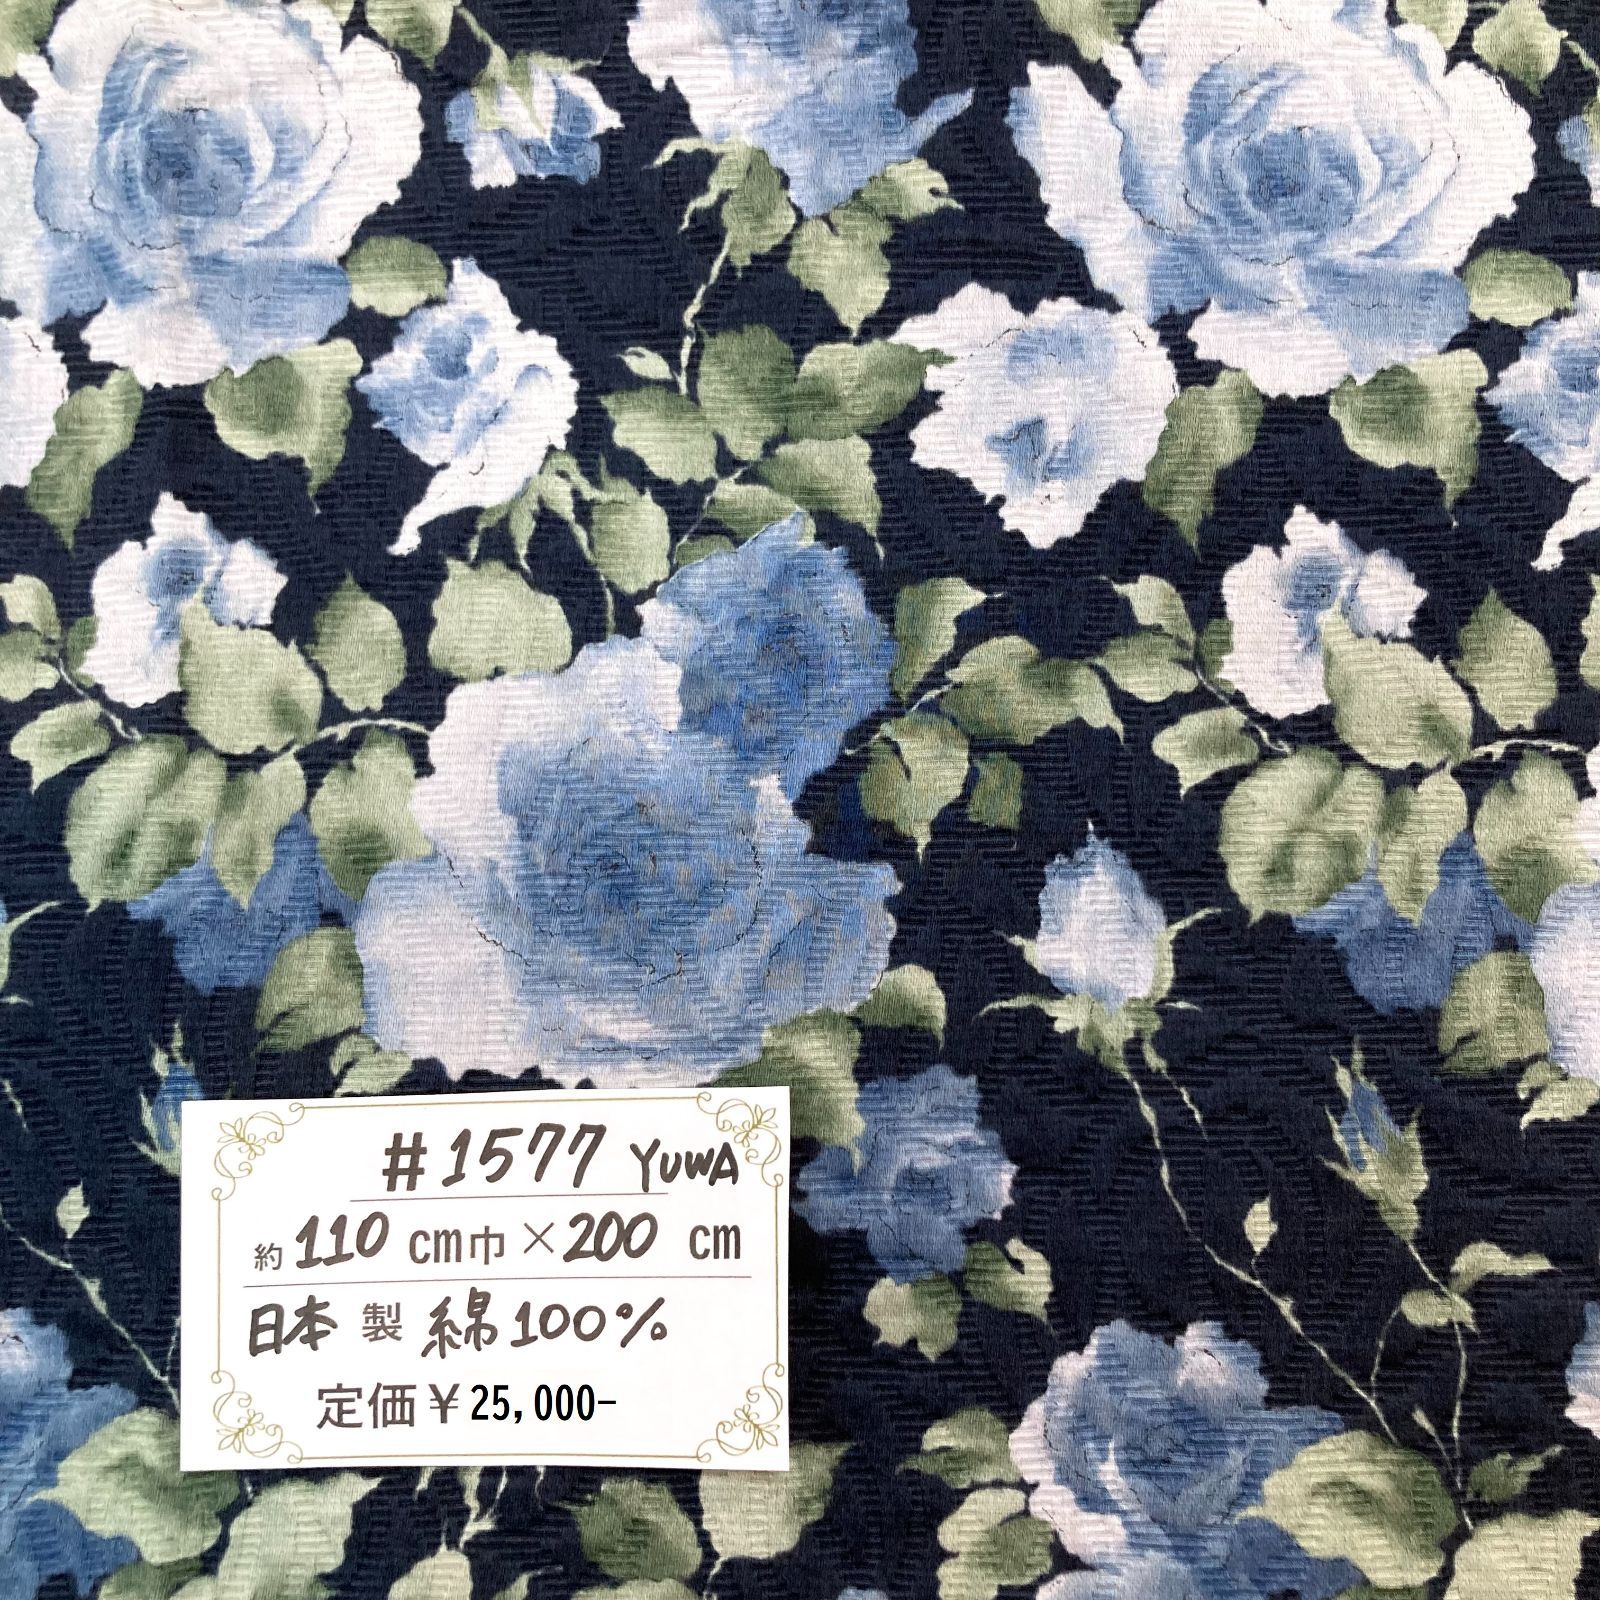 1577】YUWA製花柄フクレジャカード生地(ブルー系) 約200㎝ - メルカリ